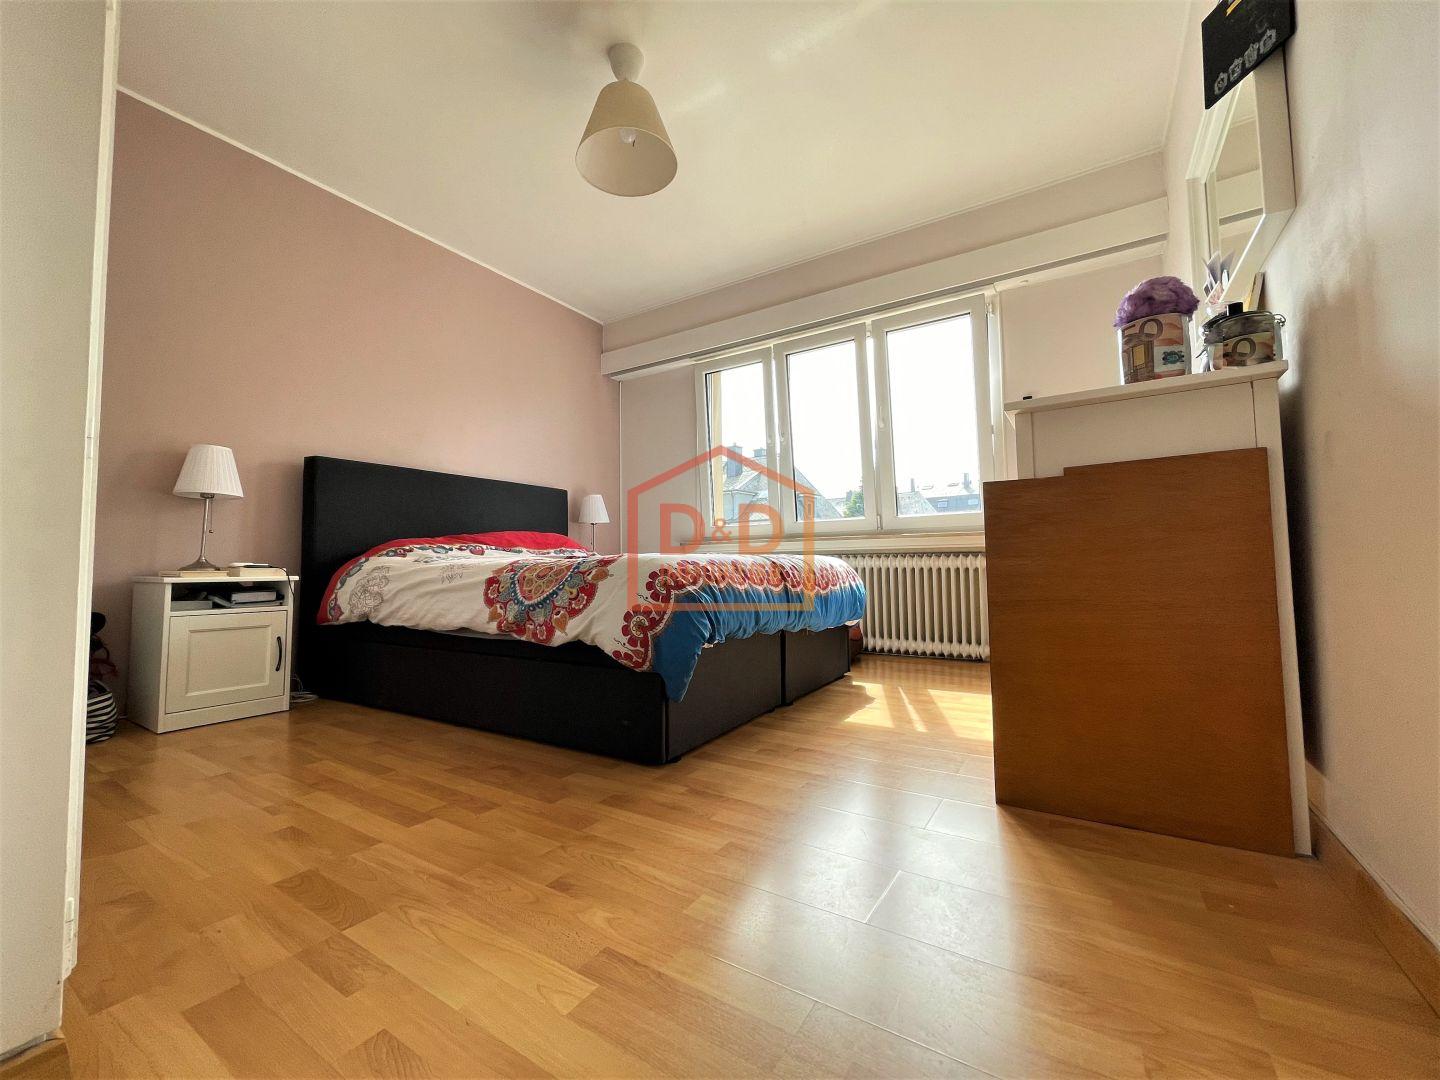 Appartement à Howald, 75 m², 2 chambres, 1 salle de bain, 1 garage, 780 000 €